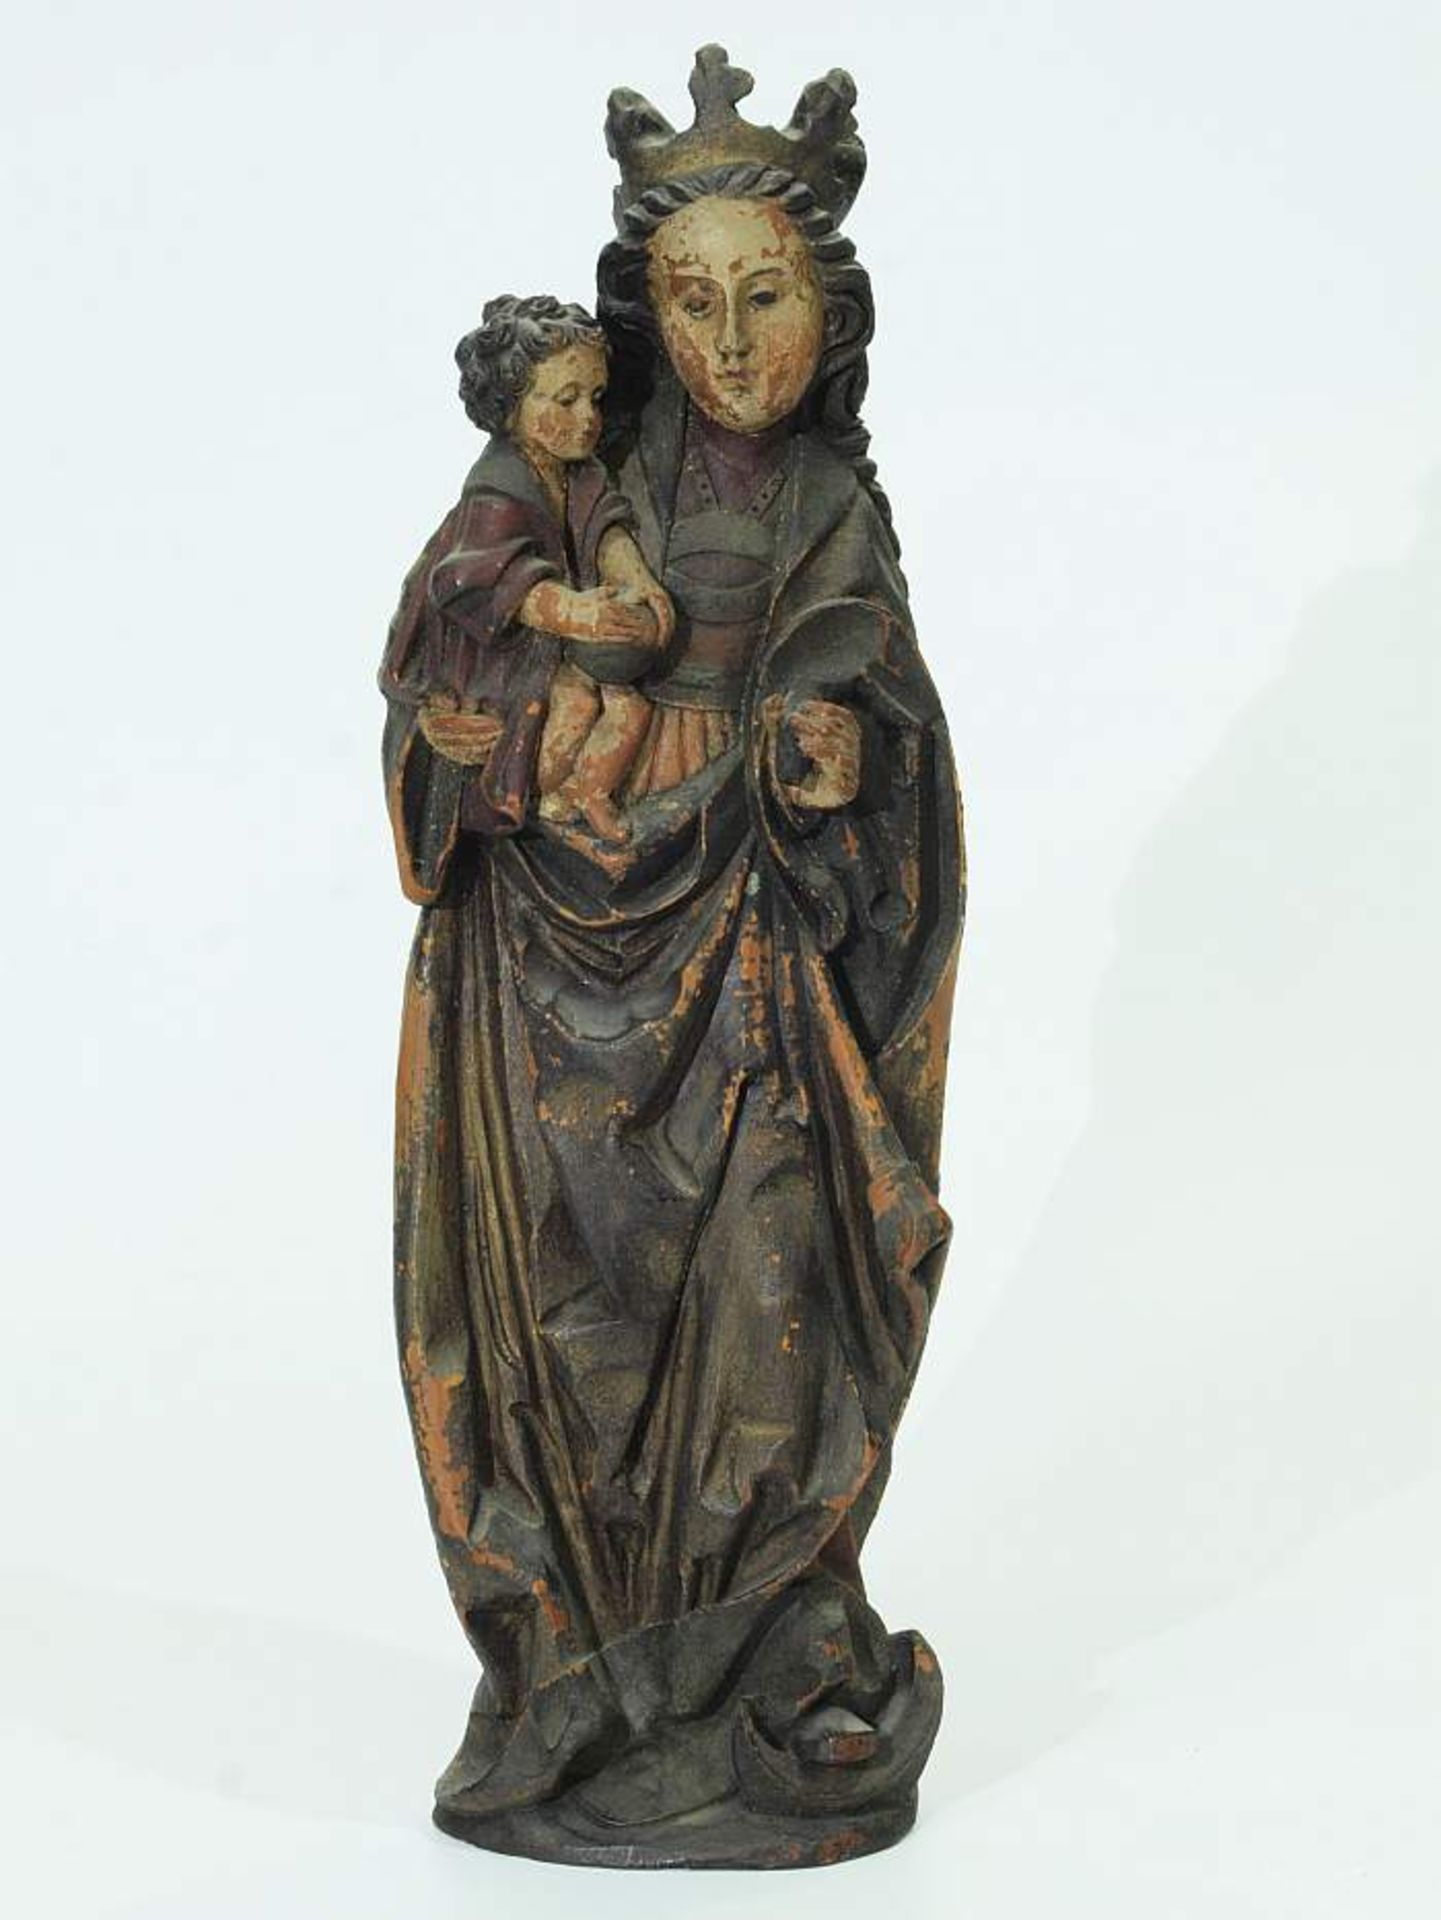 Madonna mit Marienkrone und Kind. Madonna mit Marienkrone und Kind. Wohl 19. Jahrhundert. Holz-